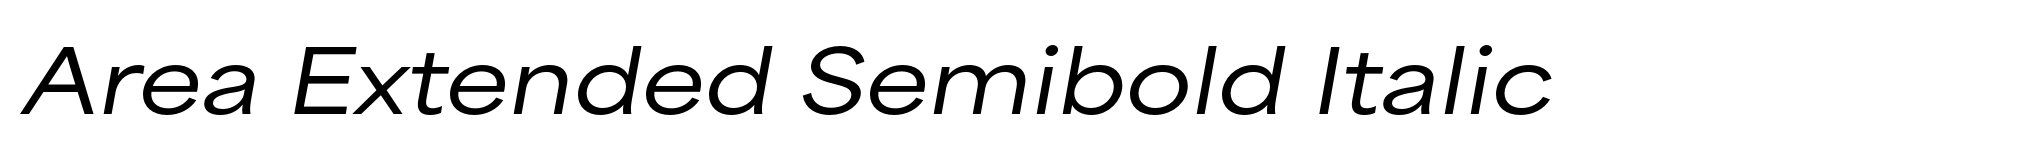 Area Extended Semibold Italic image